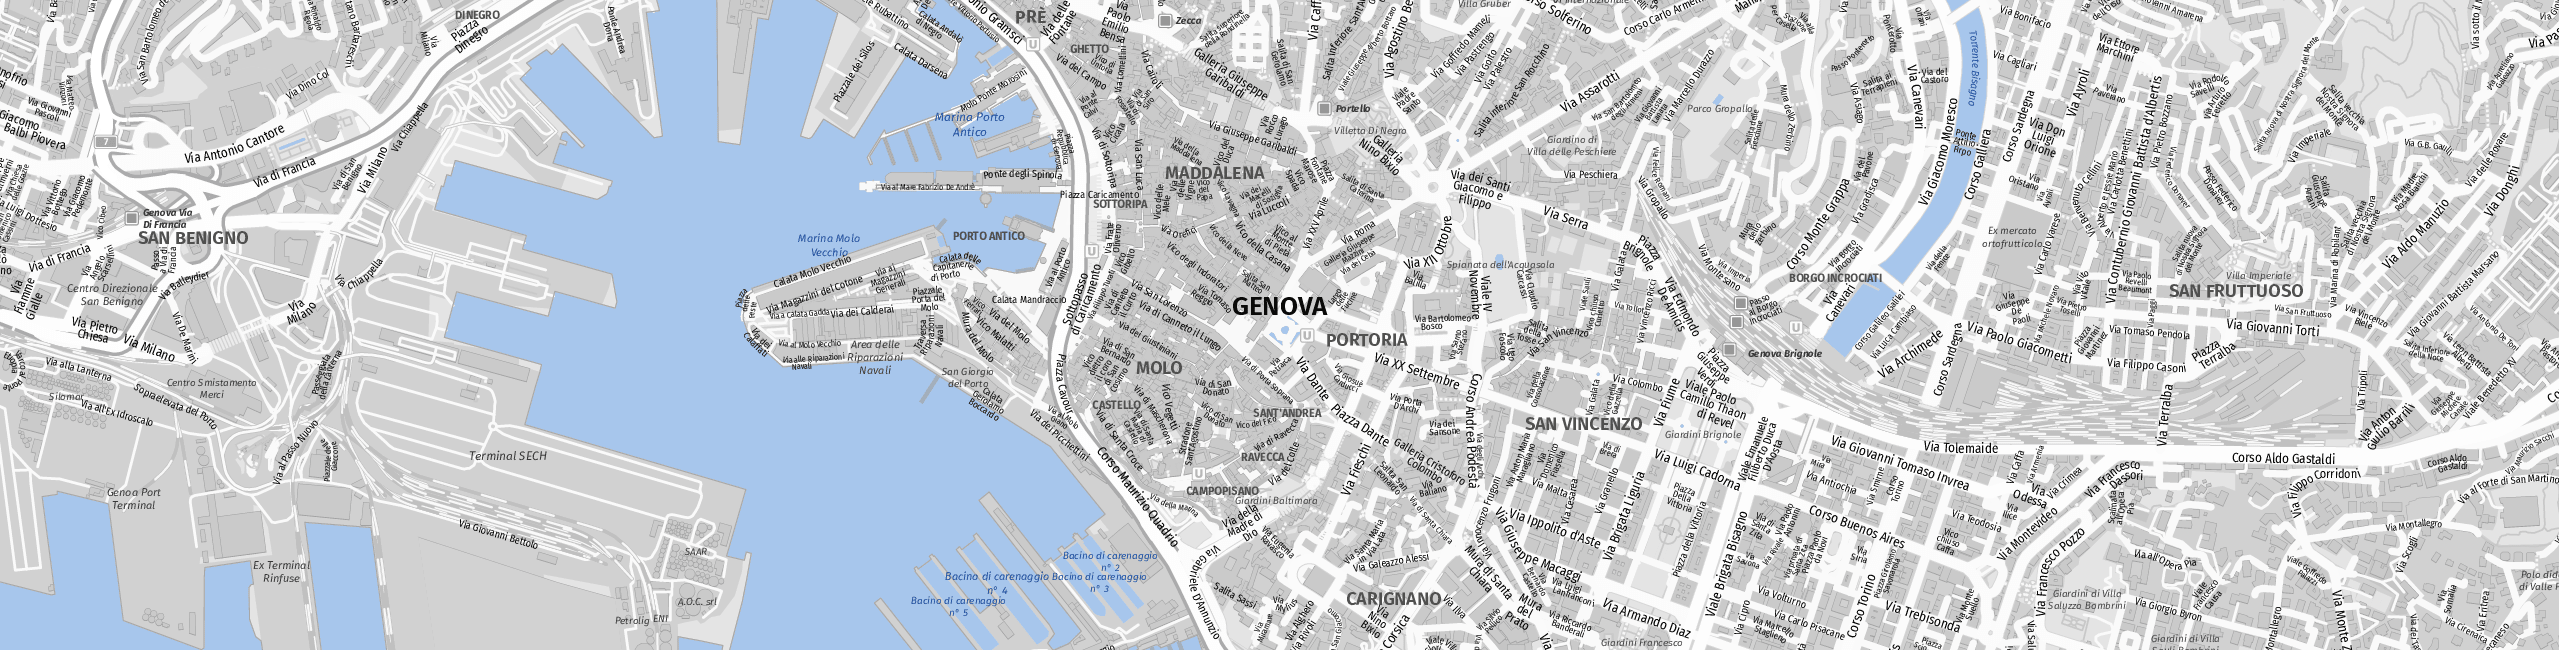 Stadtplan Genova zum Downloaden.